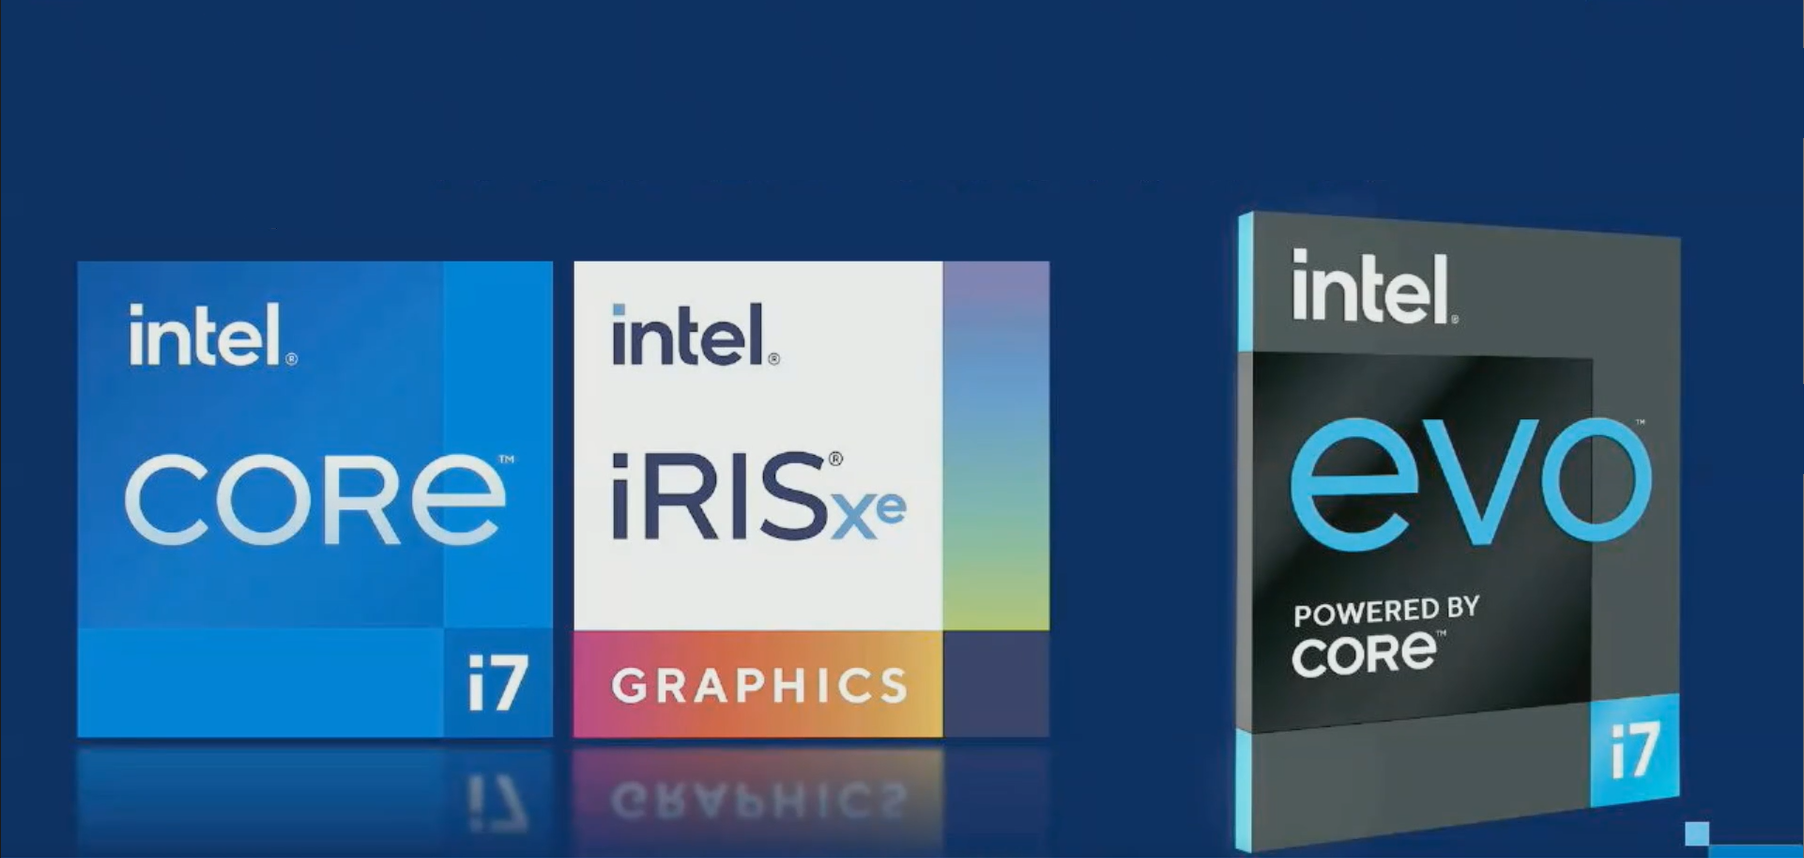 Ryzenよりも高性能と第11世代Coreをアピール。「インテル PC FES 2020